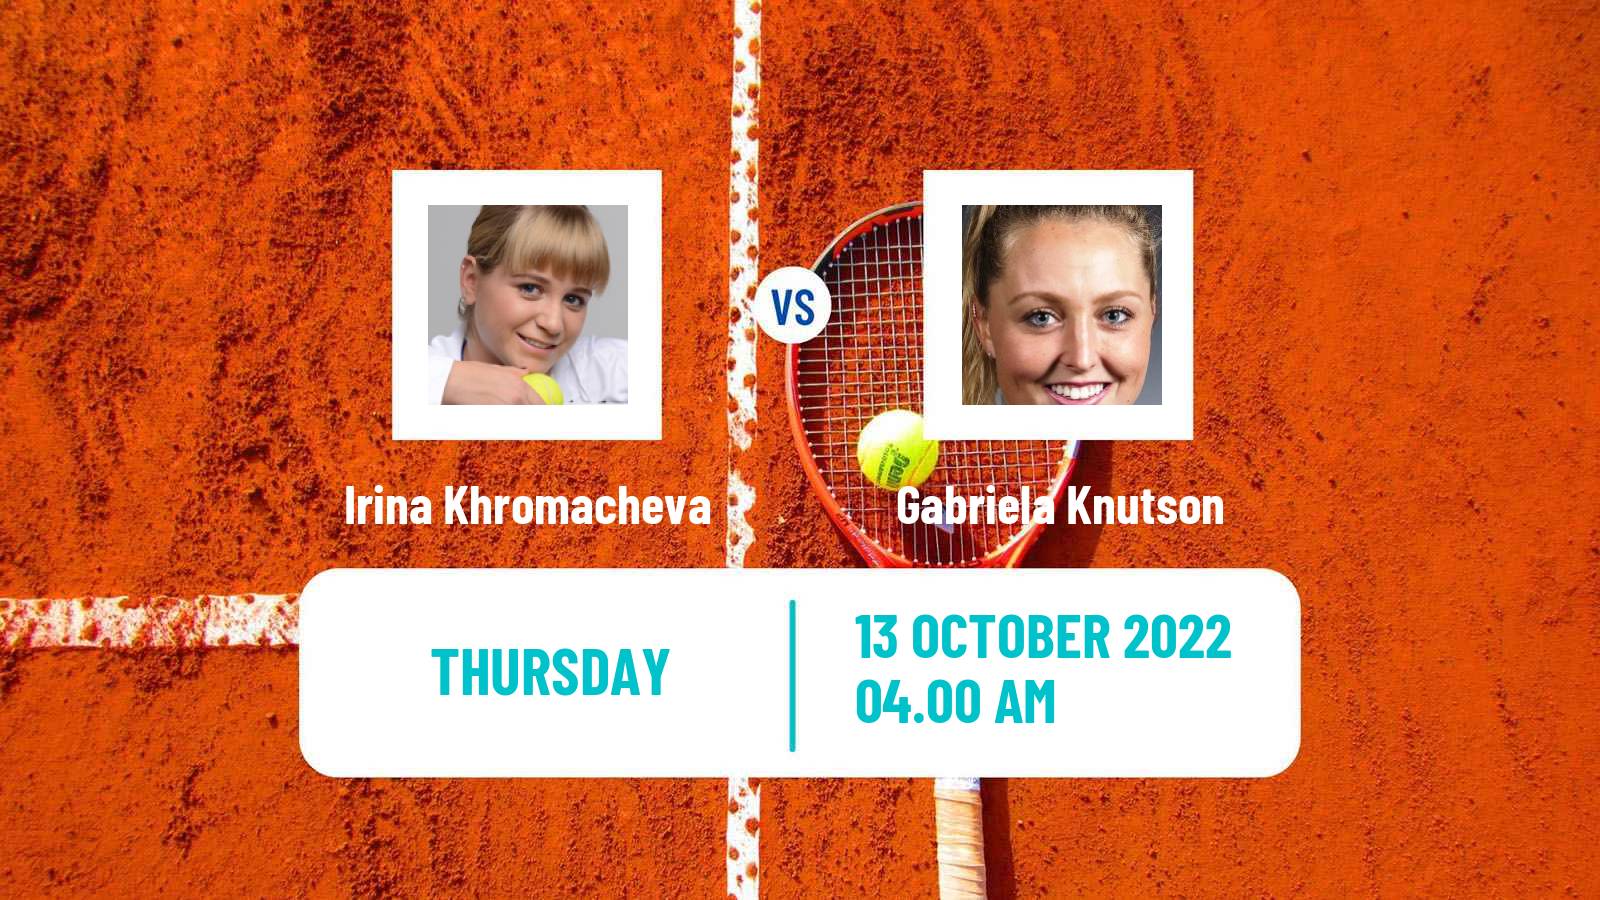 Tennis ITF Tournaments Irina Khromacheva - Gabriela Knutson